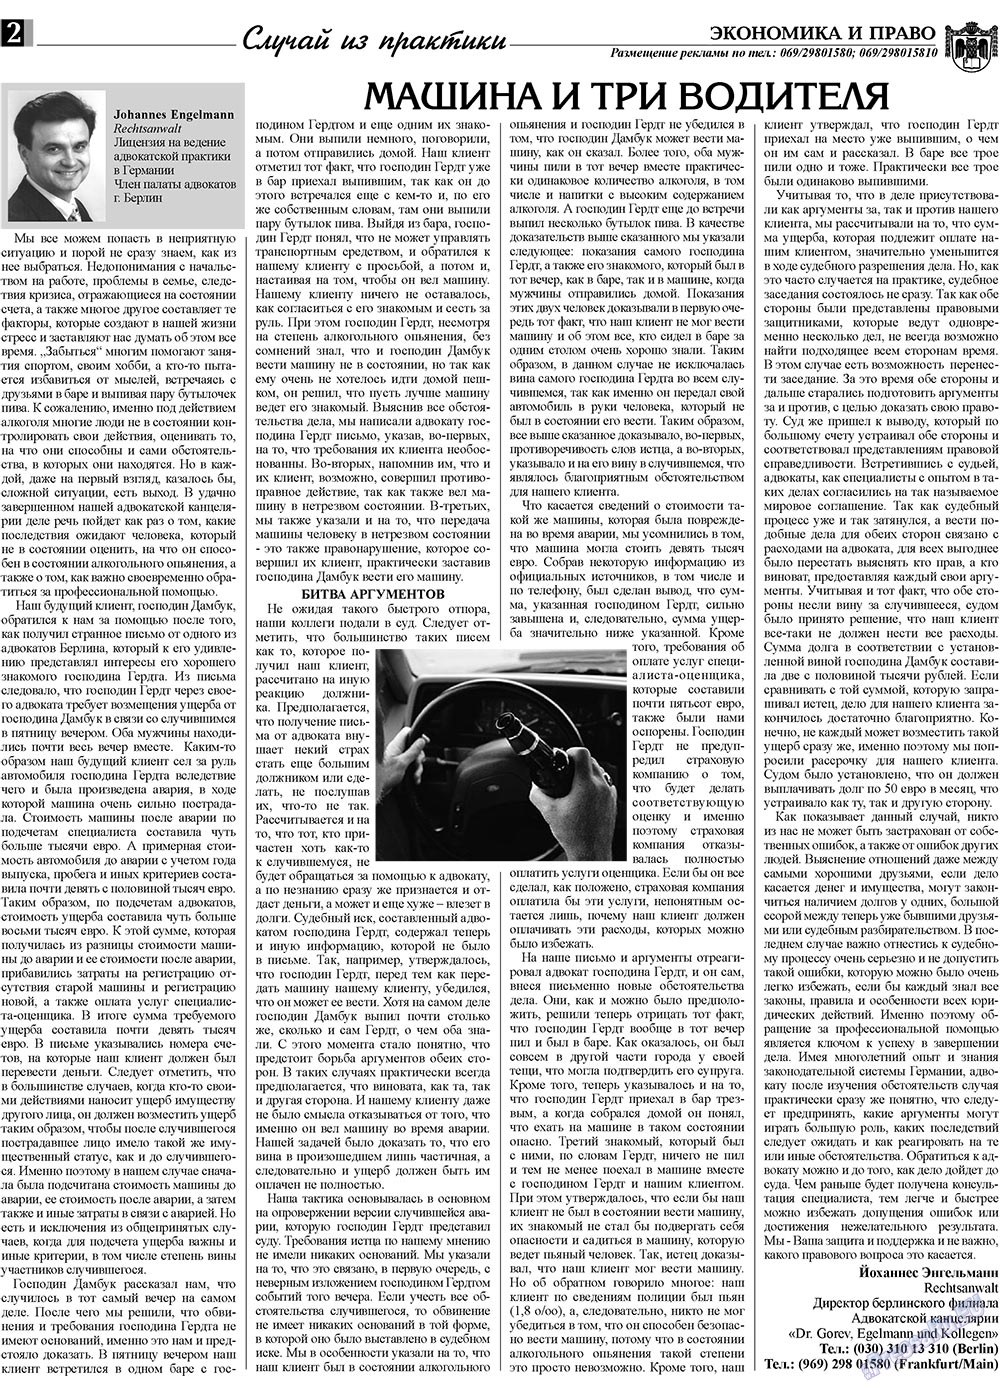 Экономика и право, газета. 2009 №6 стр.2